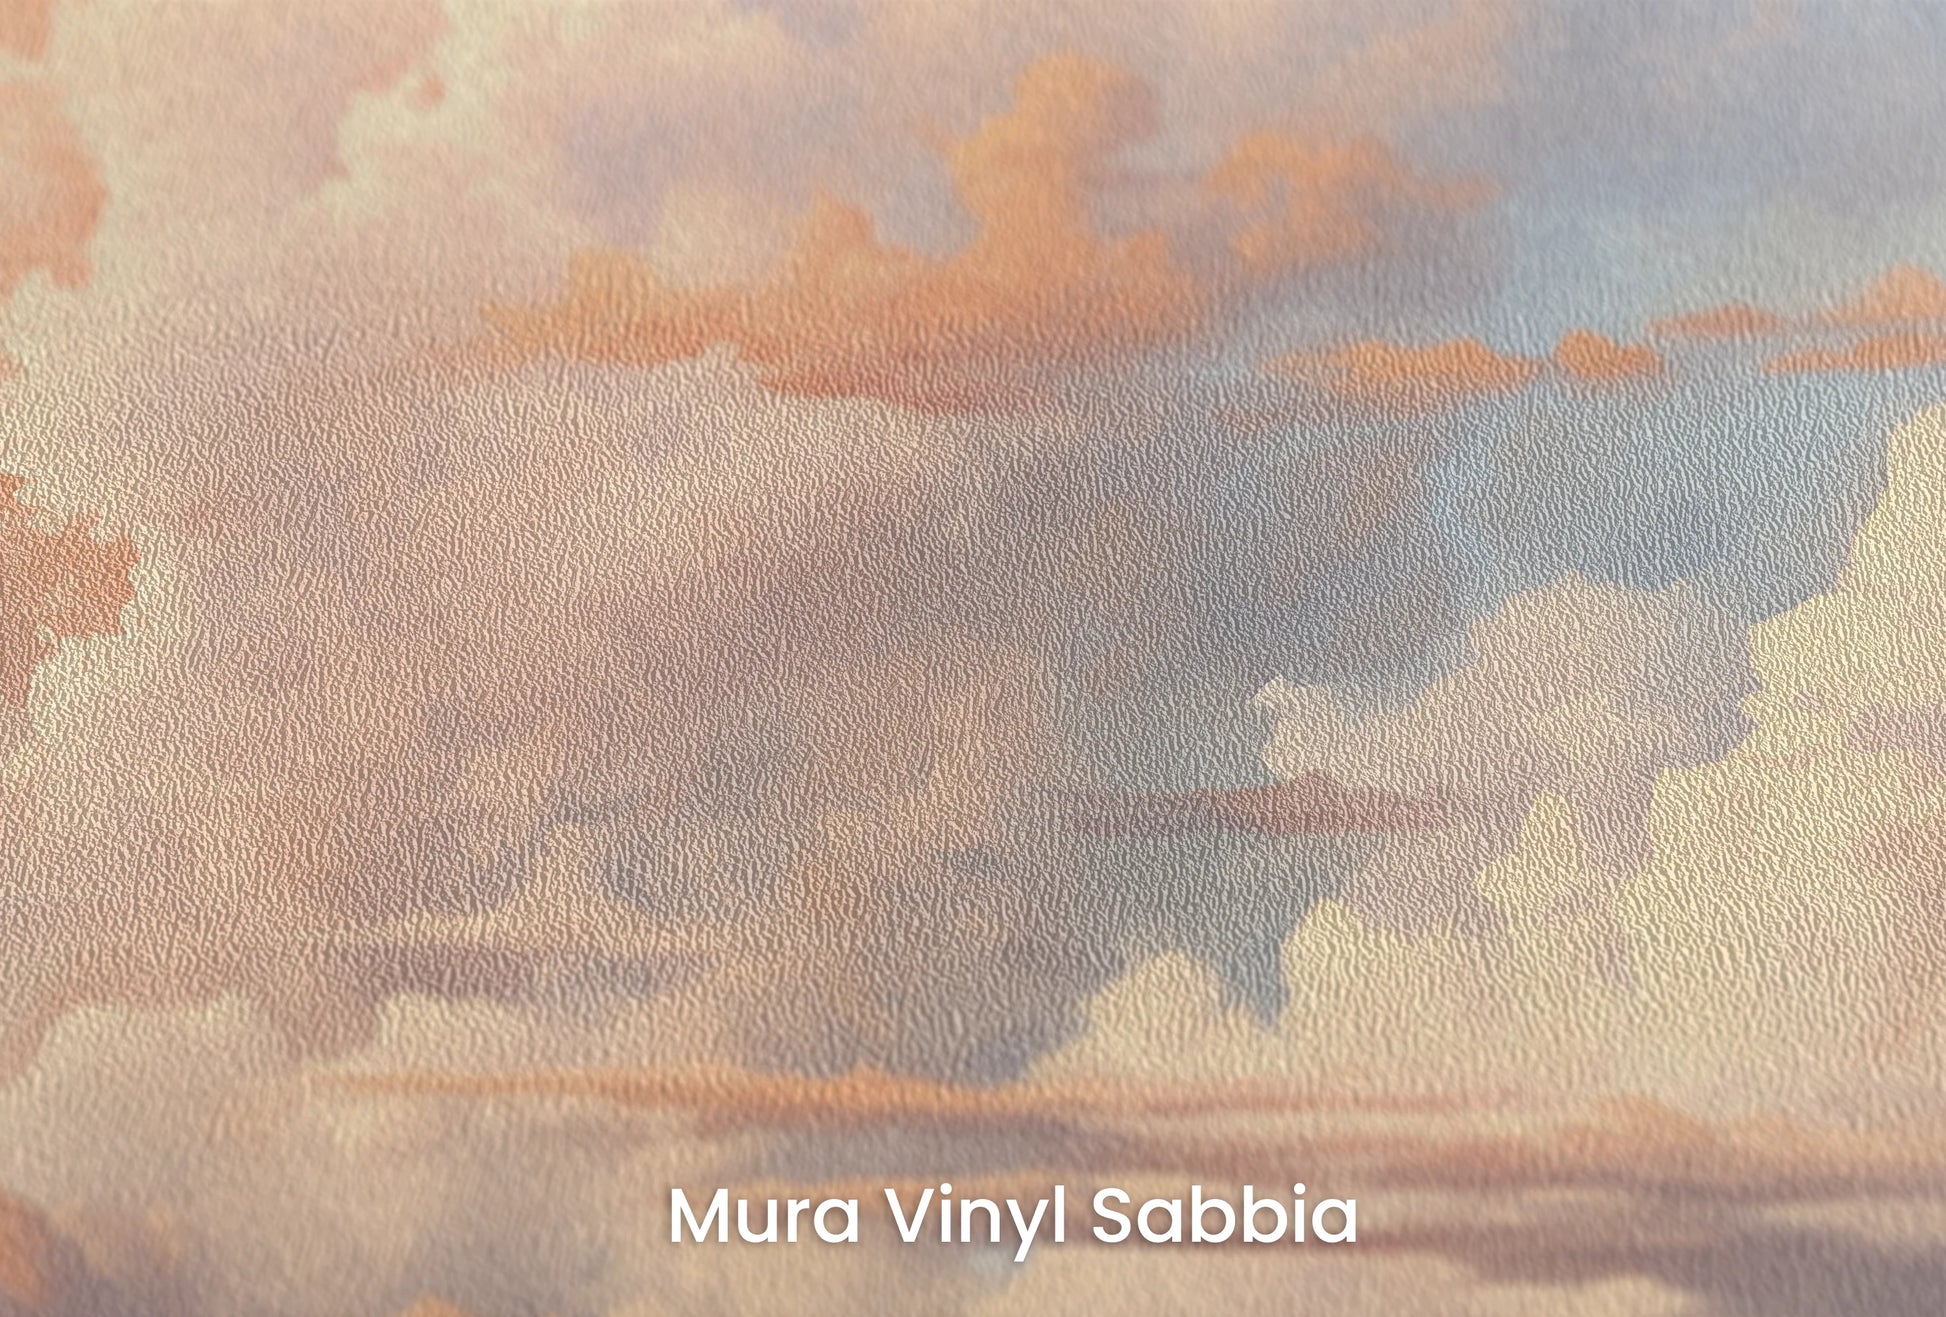 Zbliżenie na artystyczną fototapetę o nazwie Dawn's Promise na podłożu Mura Vinyl Sabbia struktura grubego ziarna piasku.